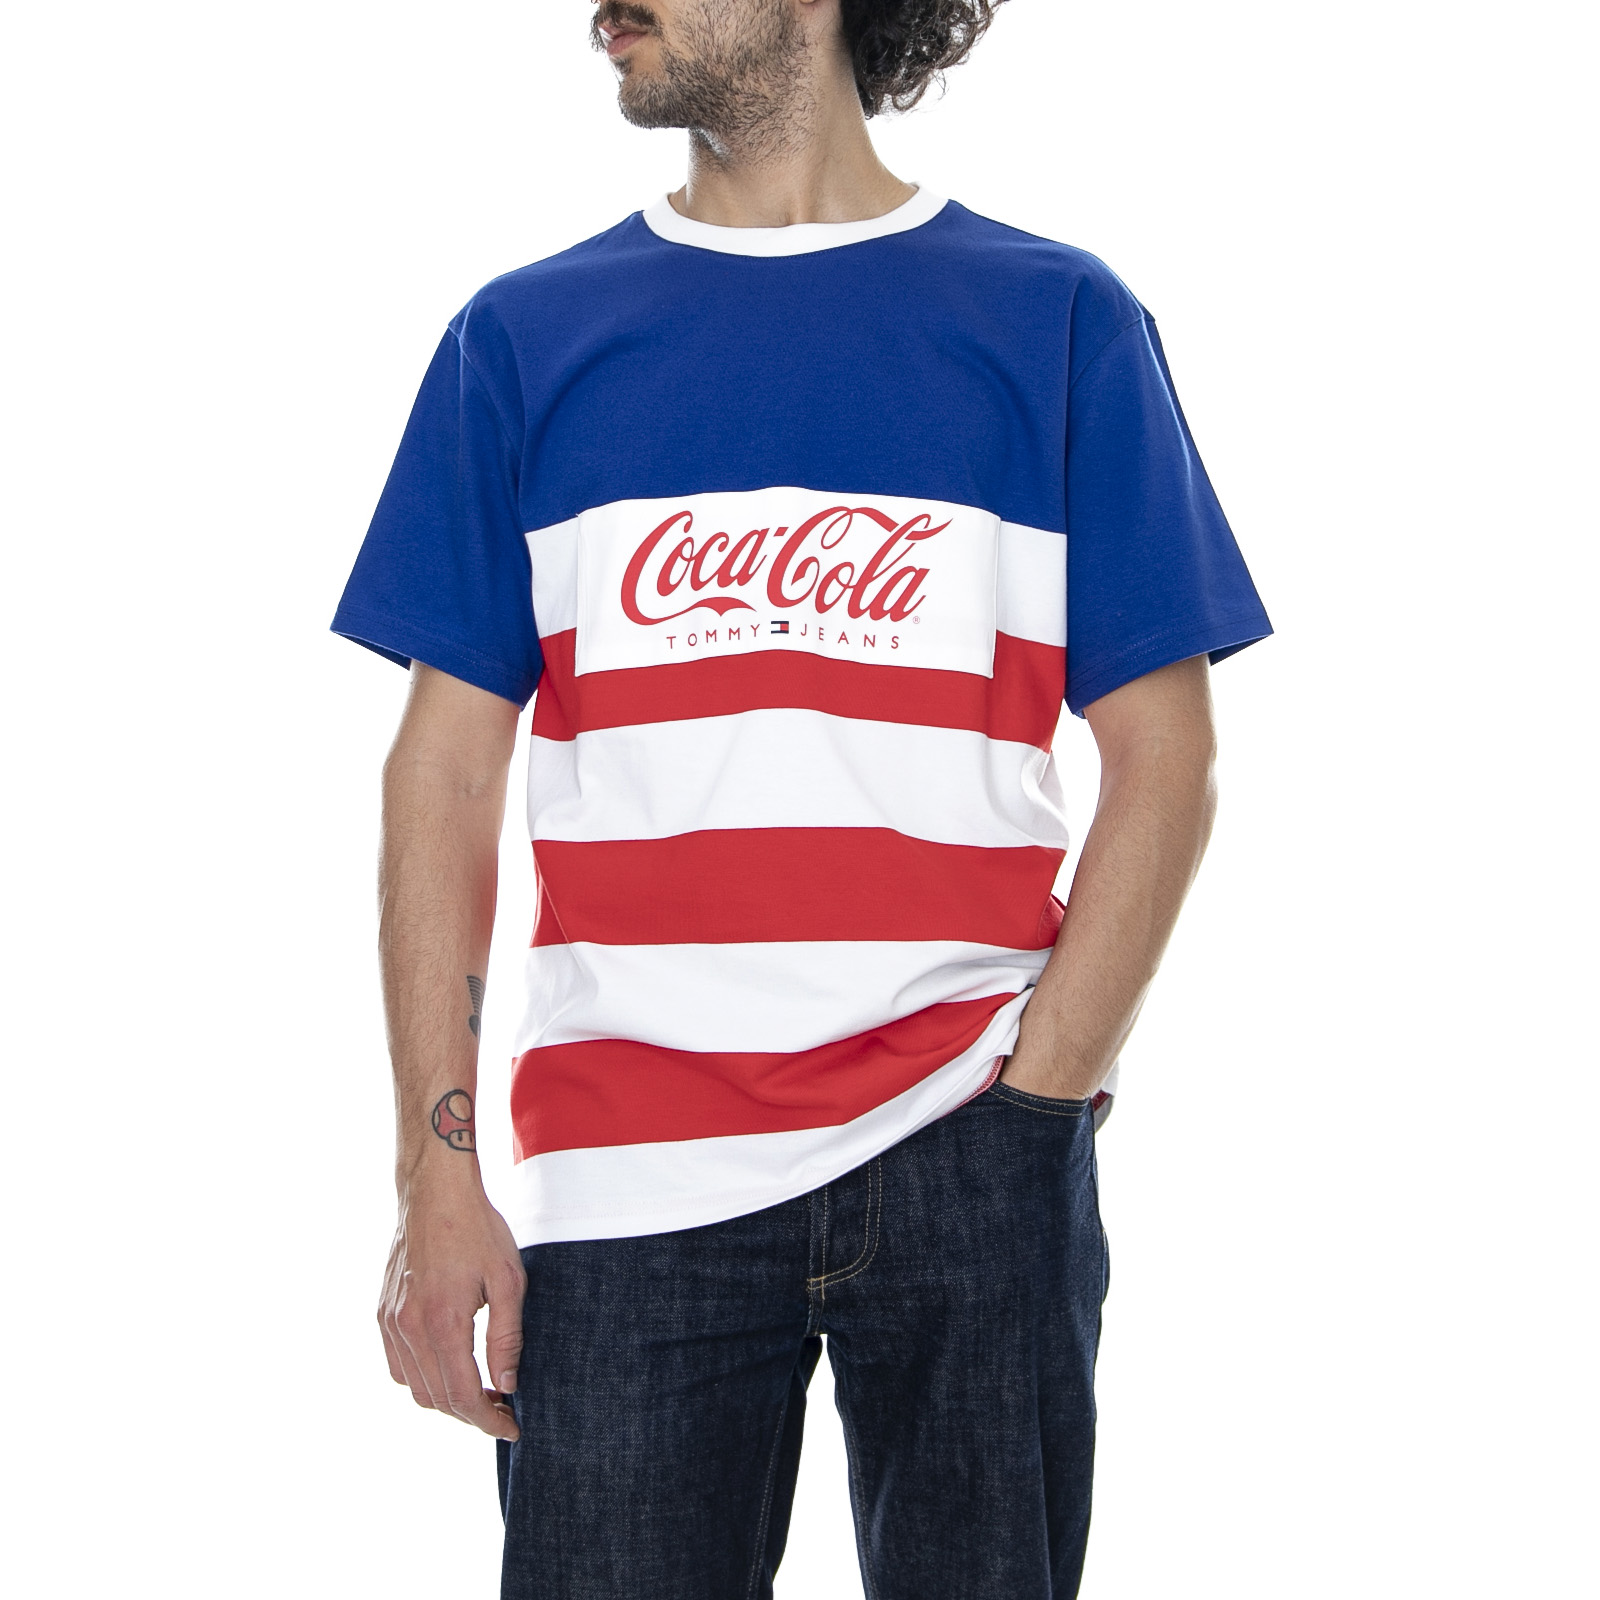 tommy hilfiger coca cola shirt